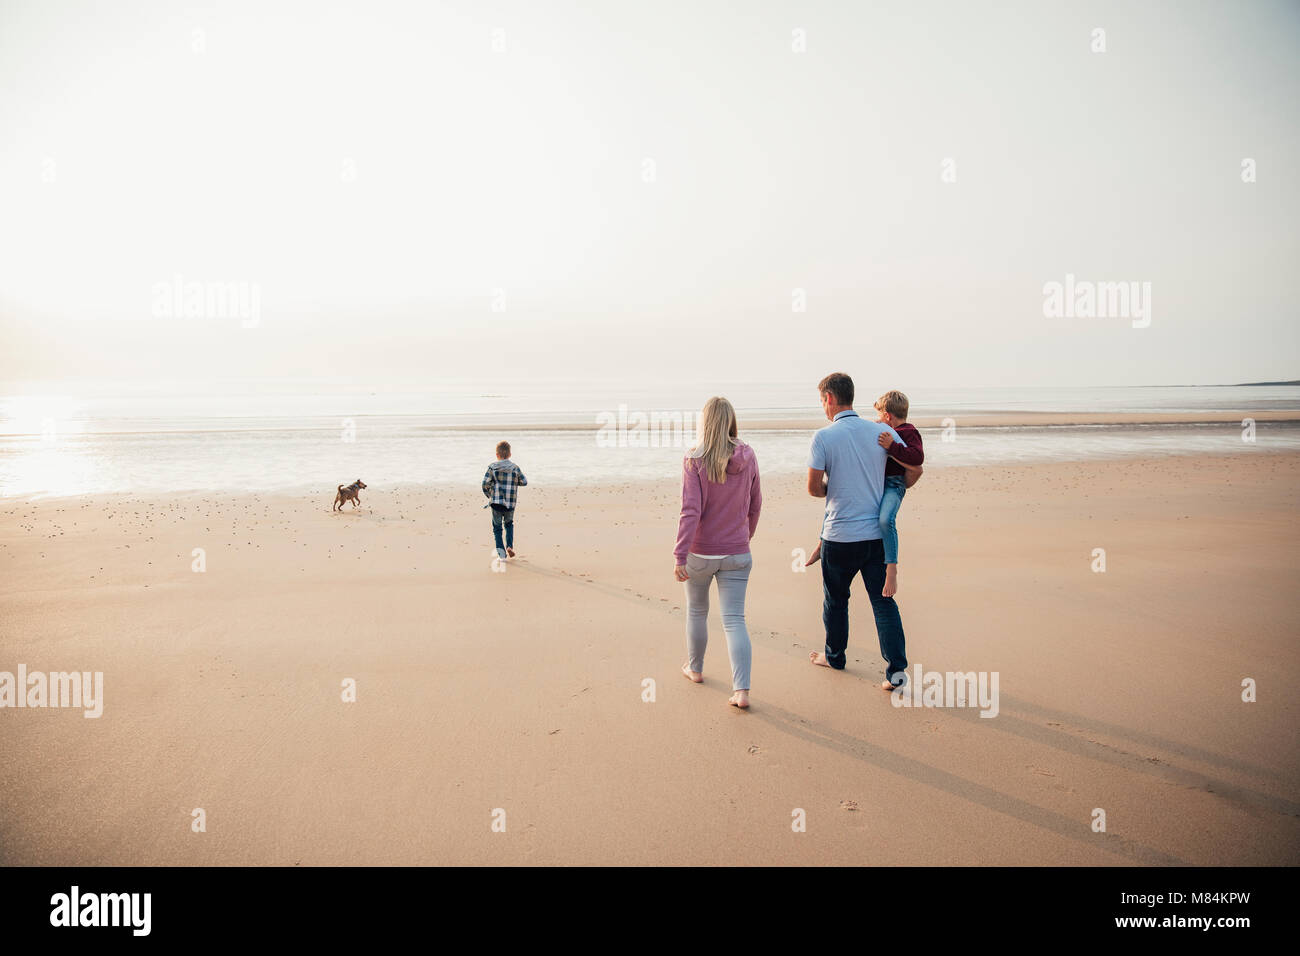 Vista trasera de familia con dos hijos andando hacia el borde del agua mientras se encuentra de vacaciones. Foto de stock